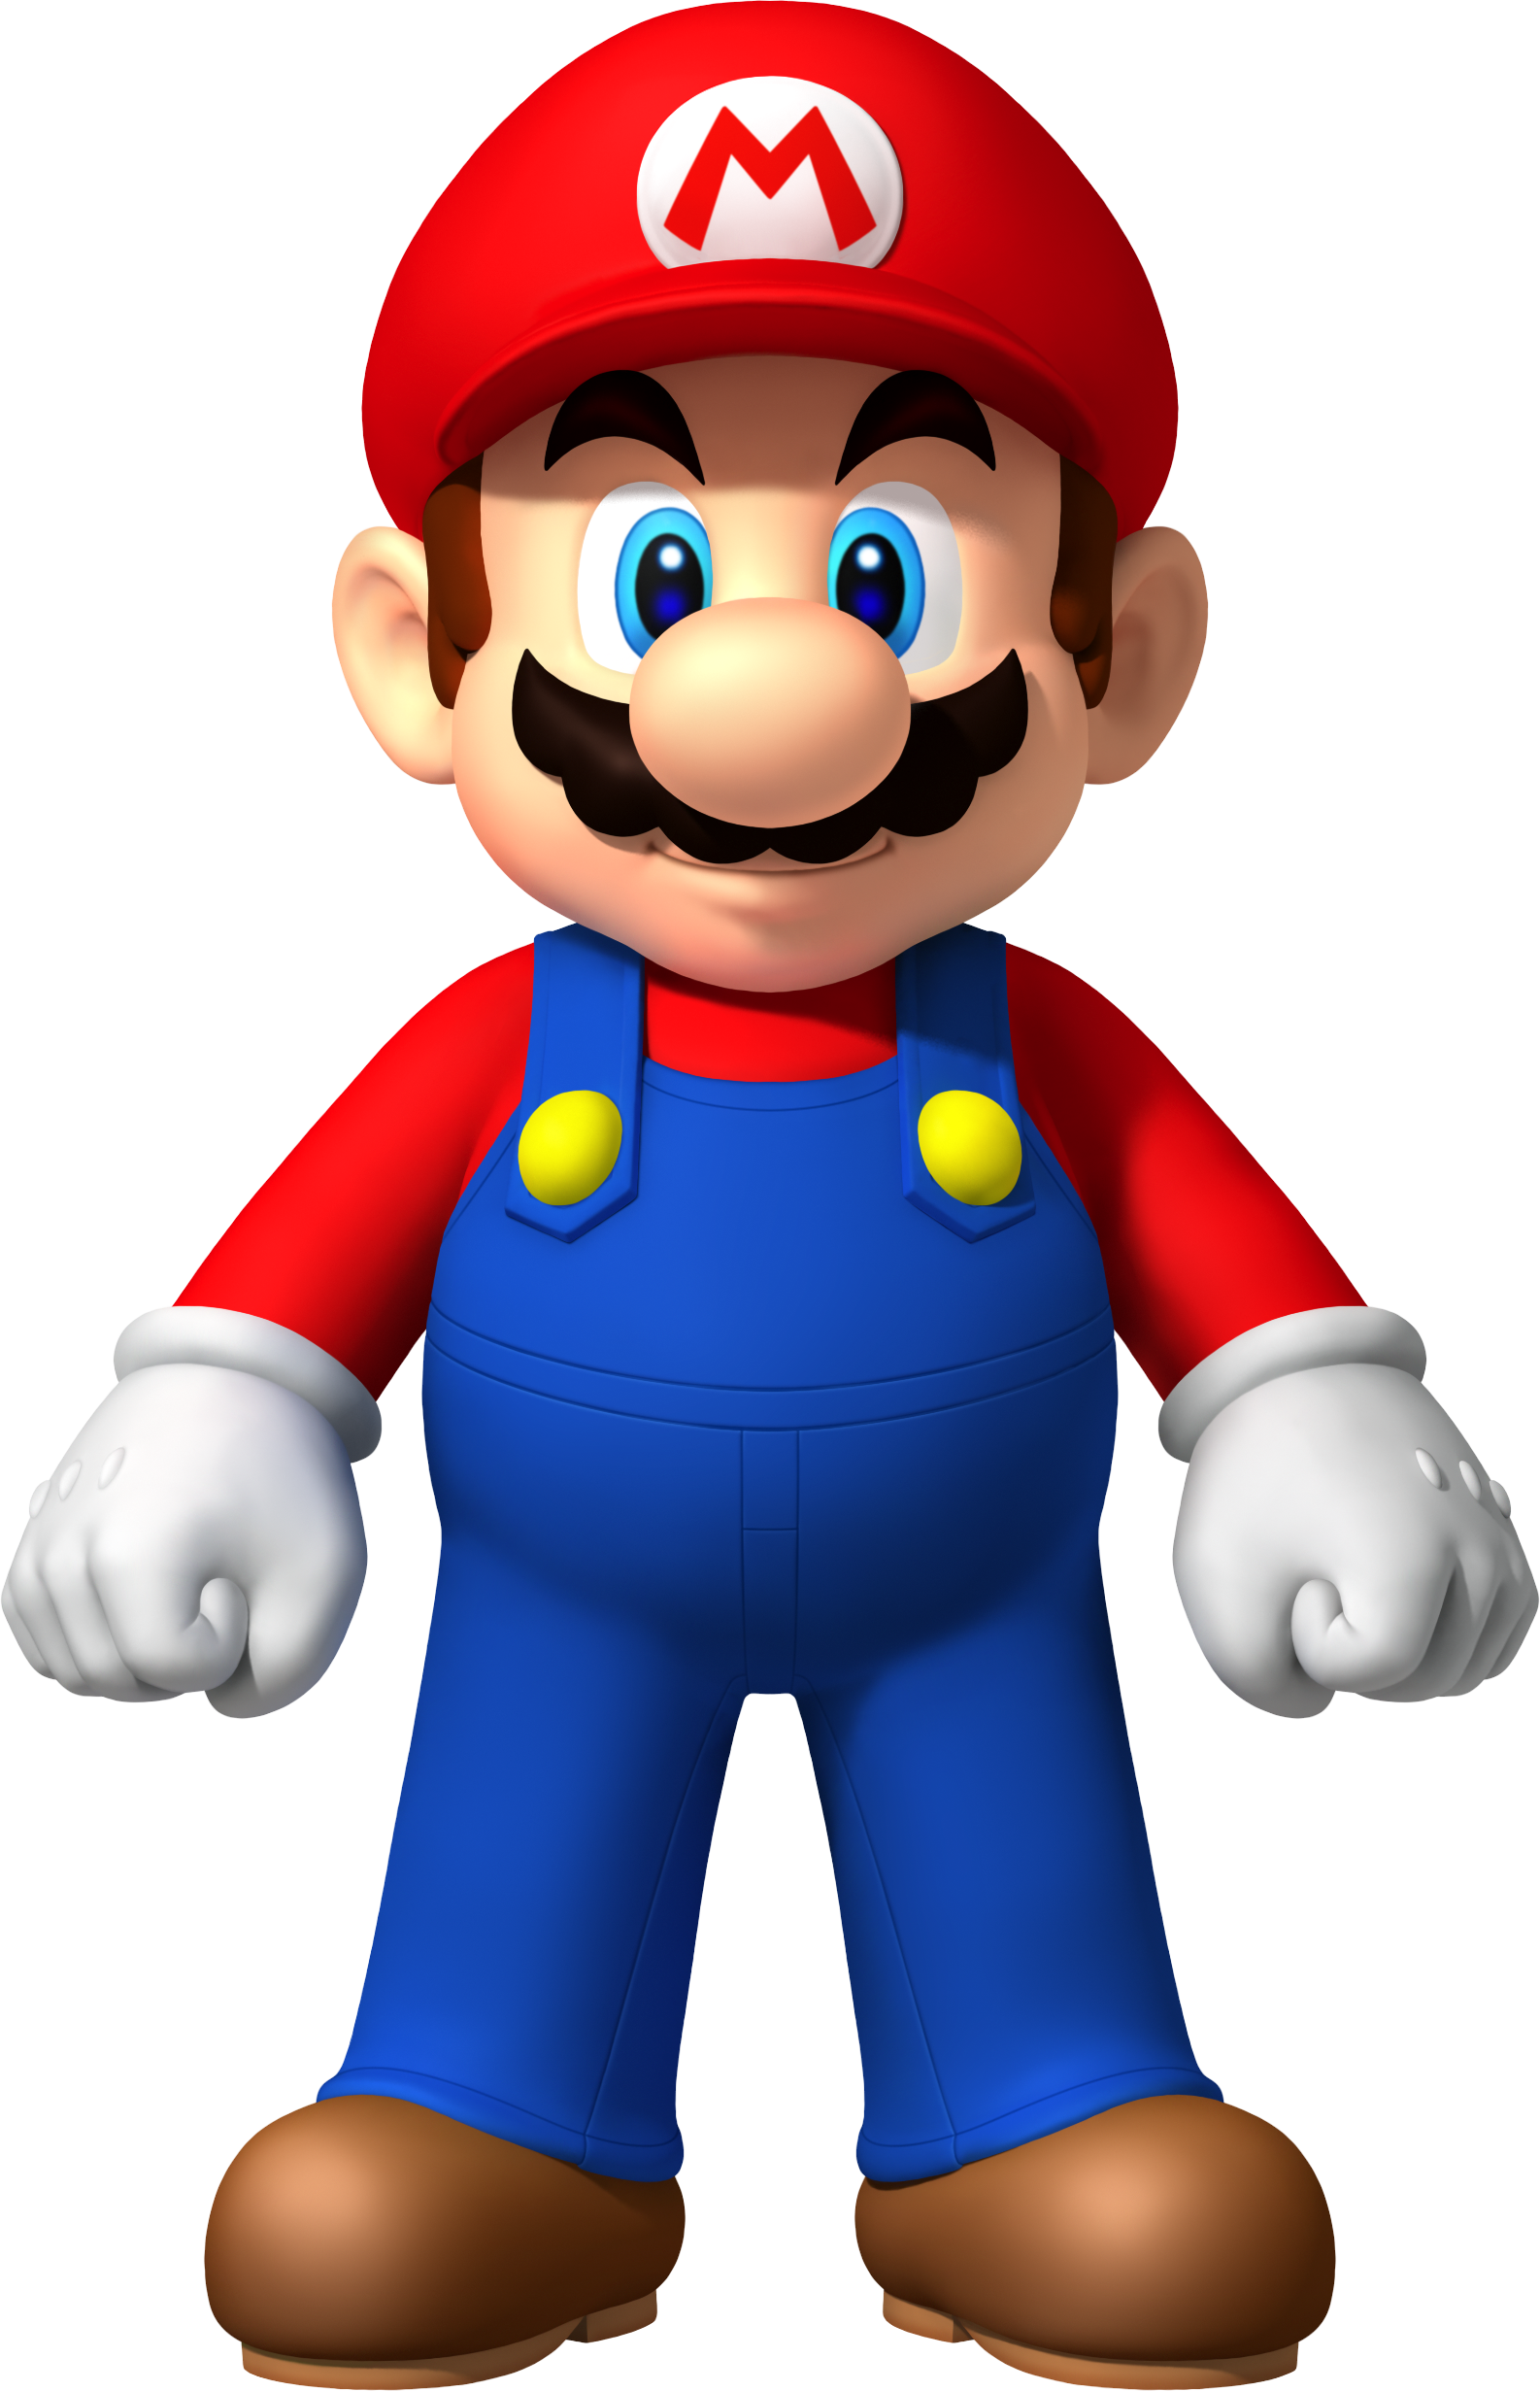 Big-Mario-super-mario-bros-32901984-1586-2462.png